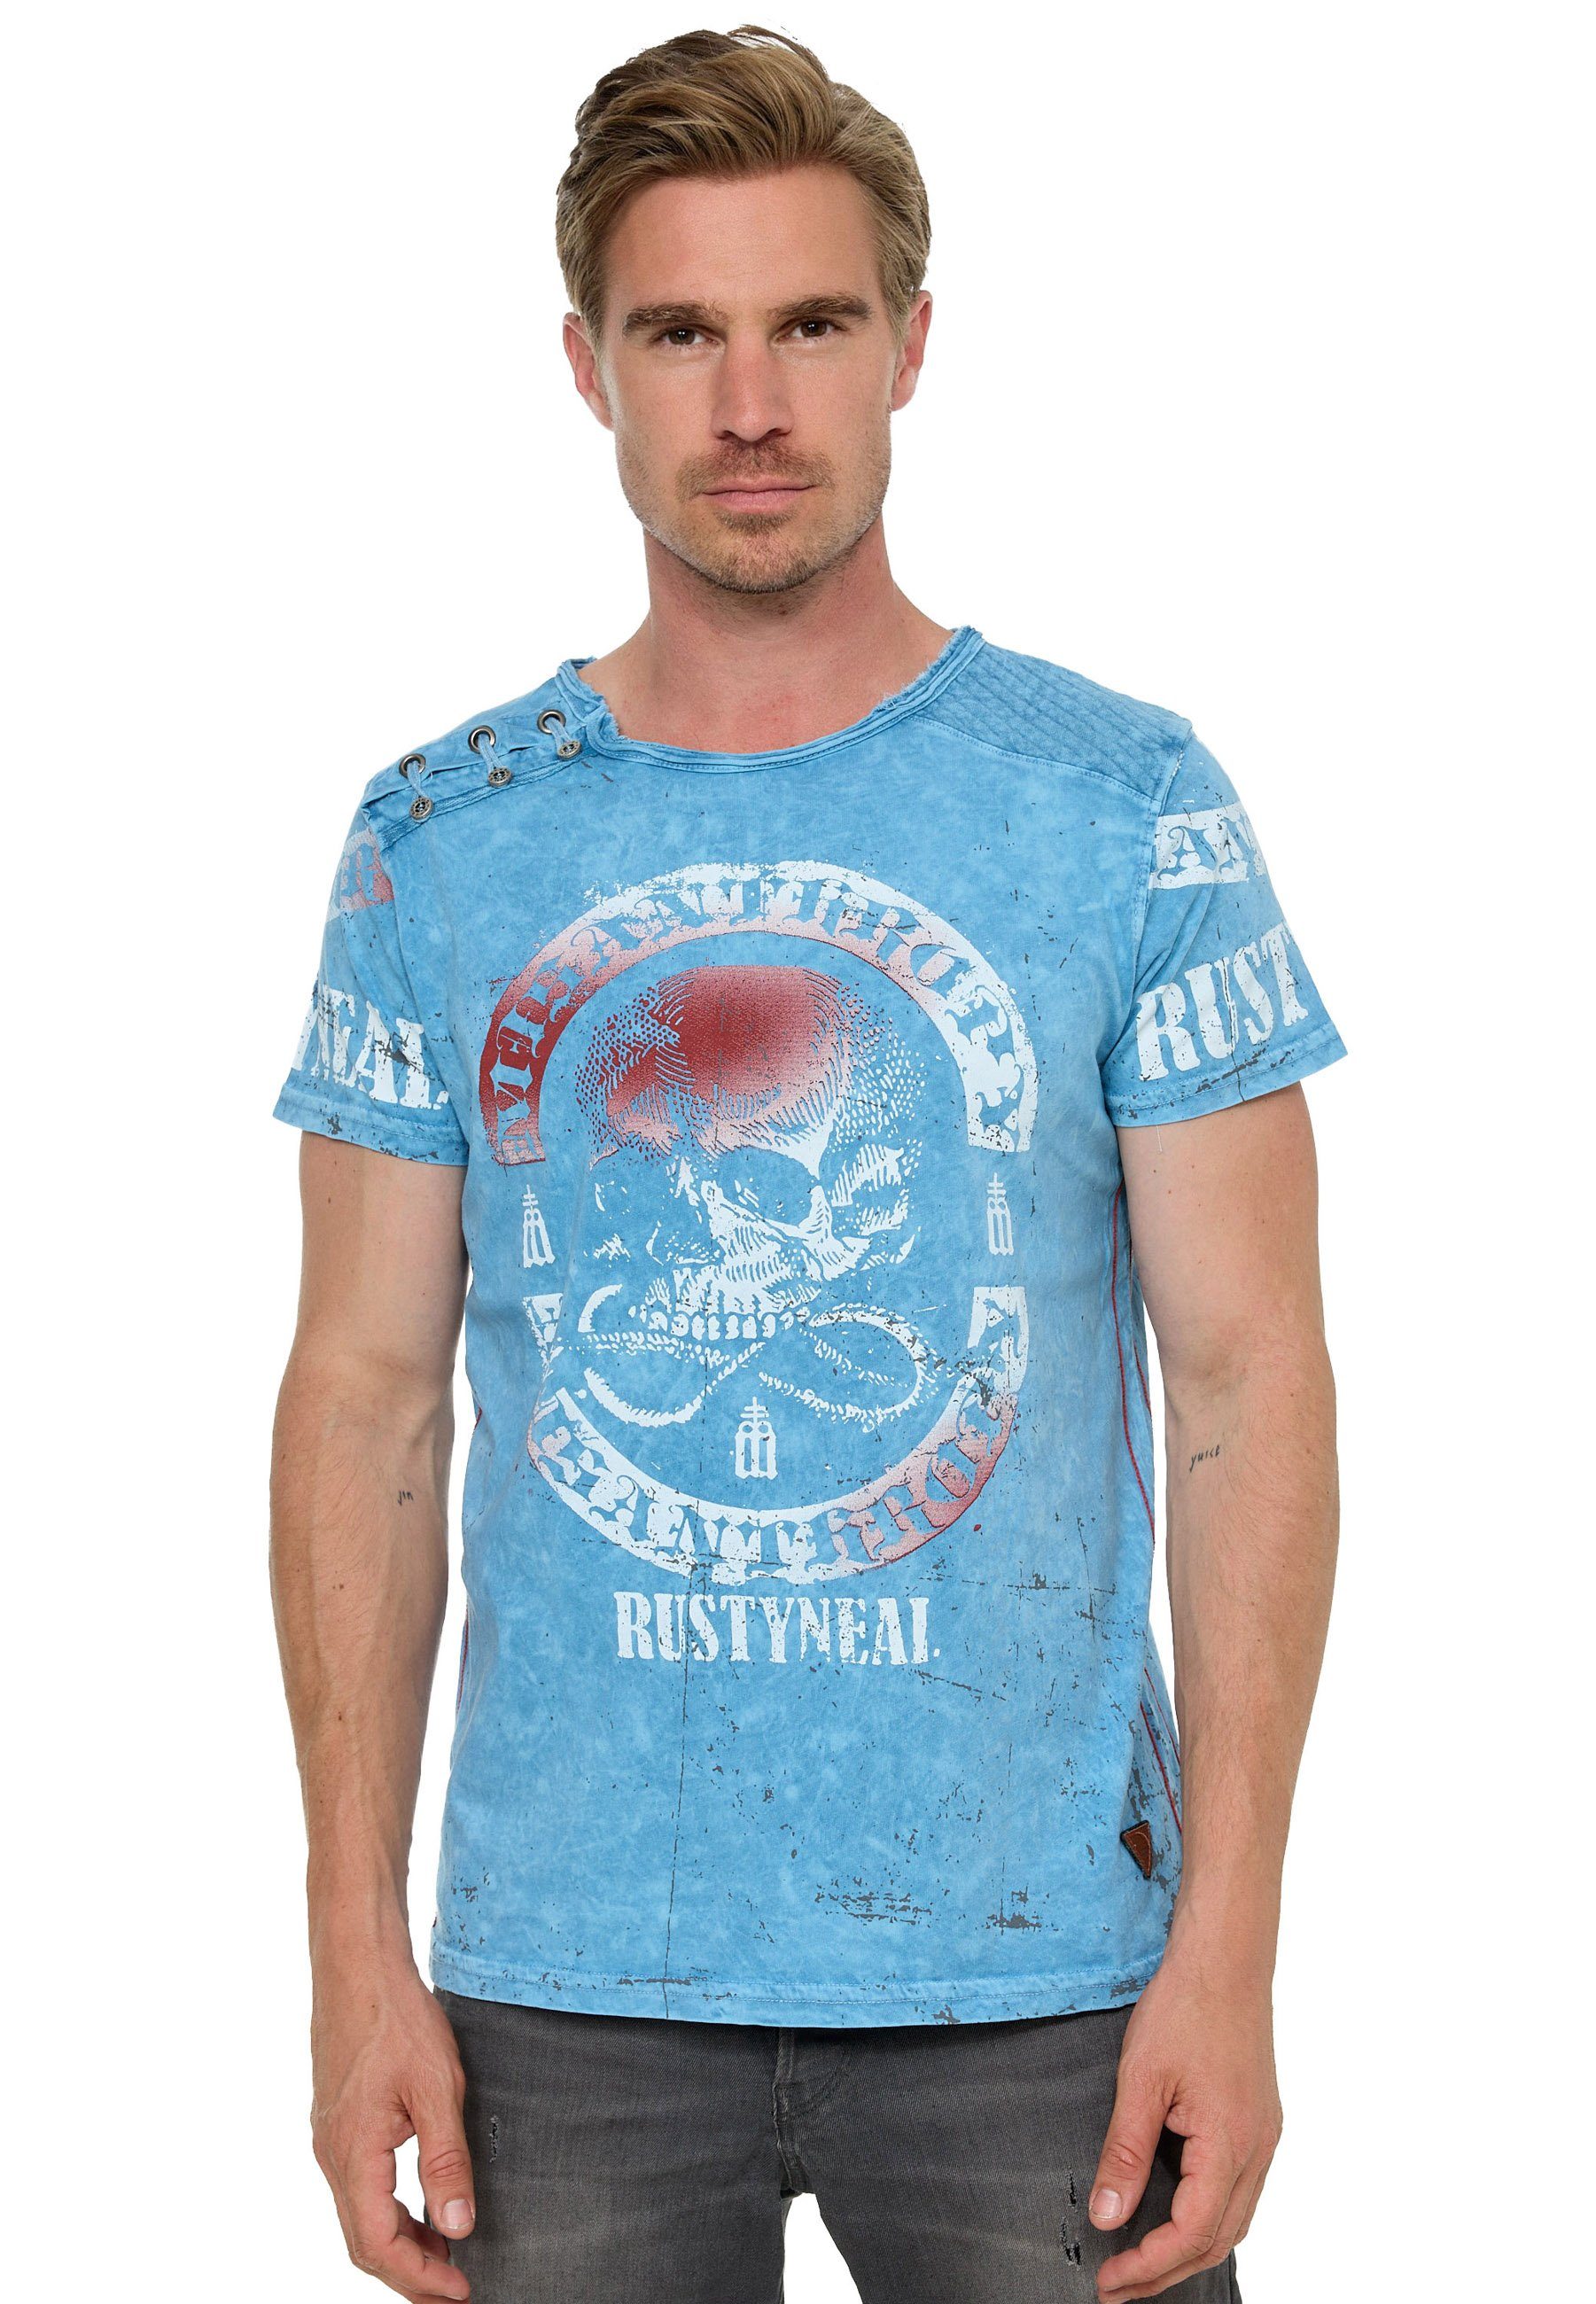 Rusty T-Shirt mit Neal Markenprint, reiner hochwertiger Aus Baumwolle gefertigt